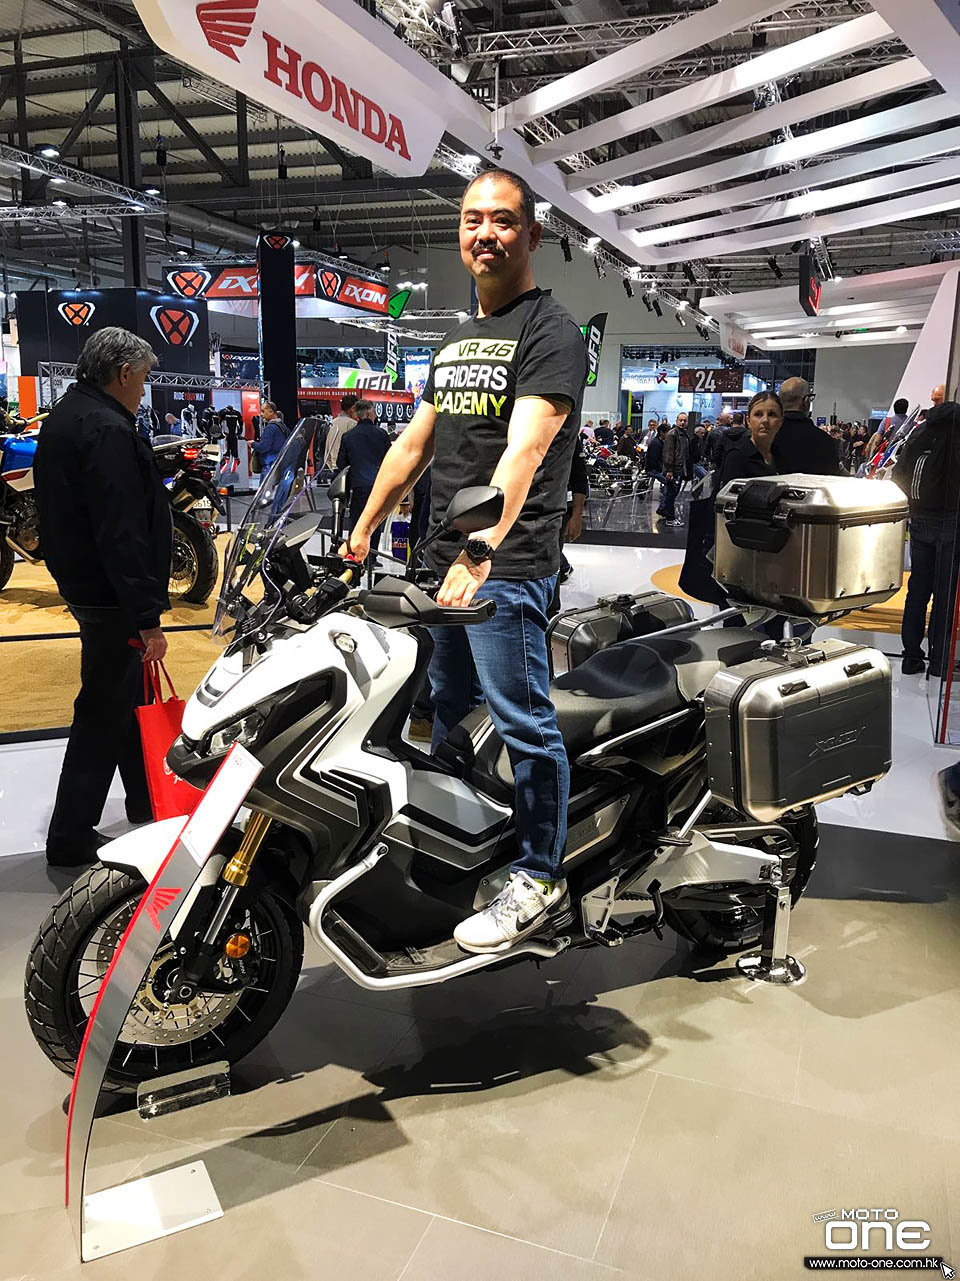 2017 HONDA X ADV ITALY MOTORCYCLE SHOW